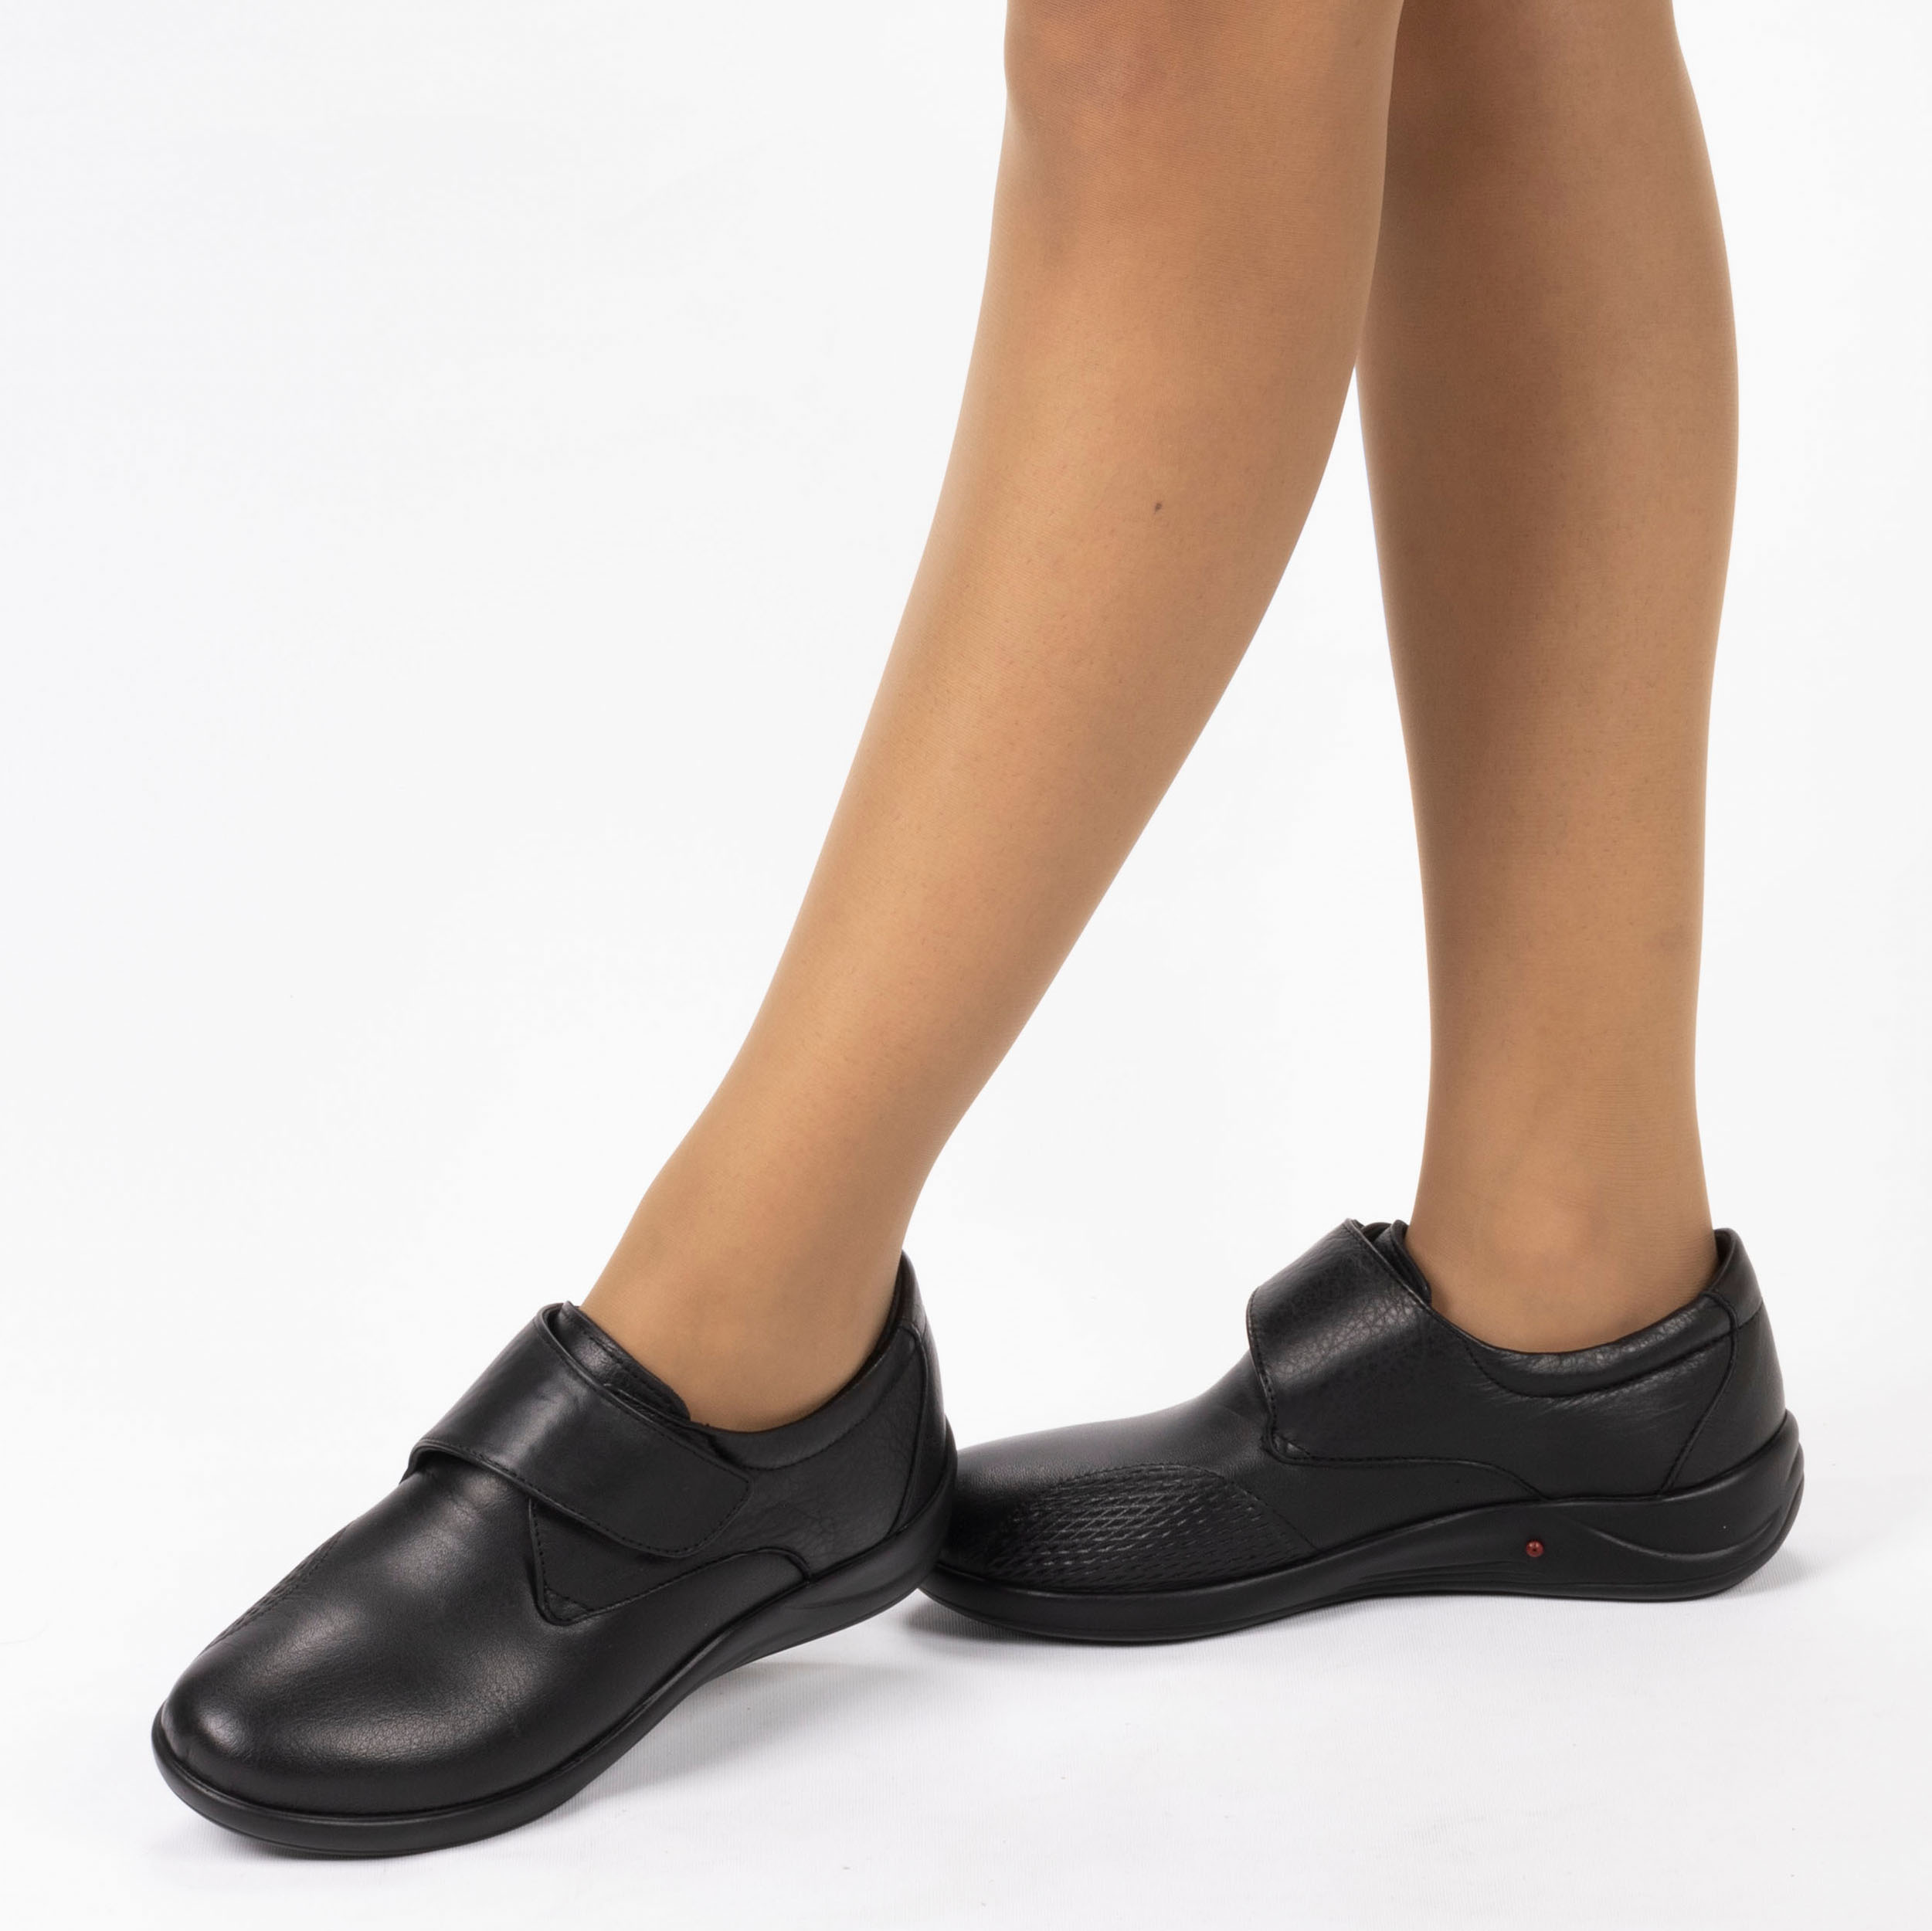 Kadın Hakiki Deri Anatomik Hafif Tasarım Topuk Yastıklı Cırt Cırtlı Kemik Çıkıntısı Konfort Ayakkabı, Renk: Siyah, Beden: 39